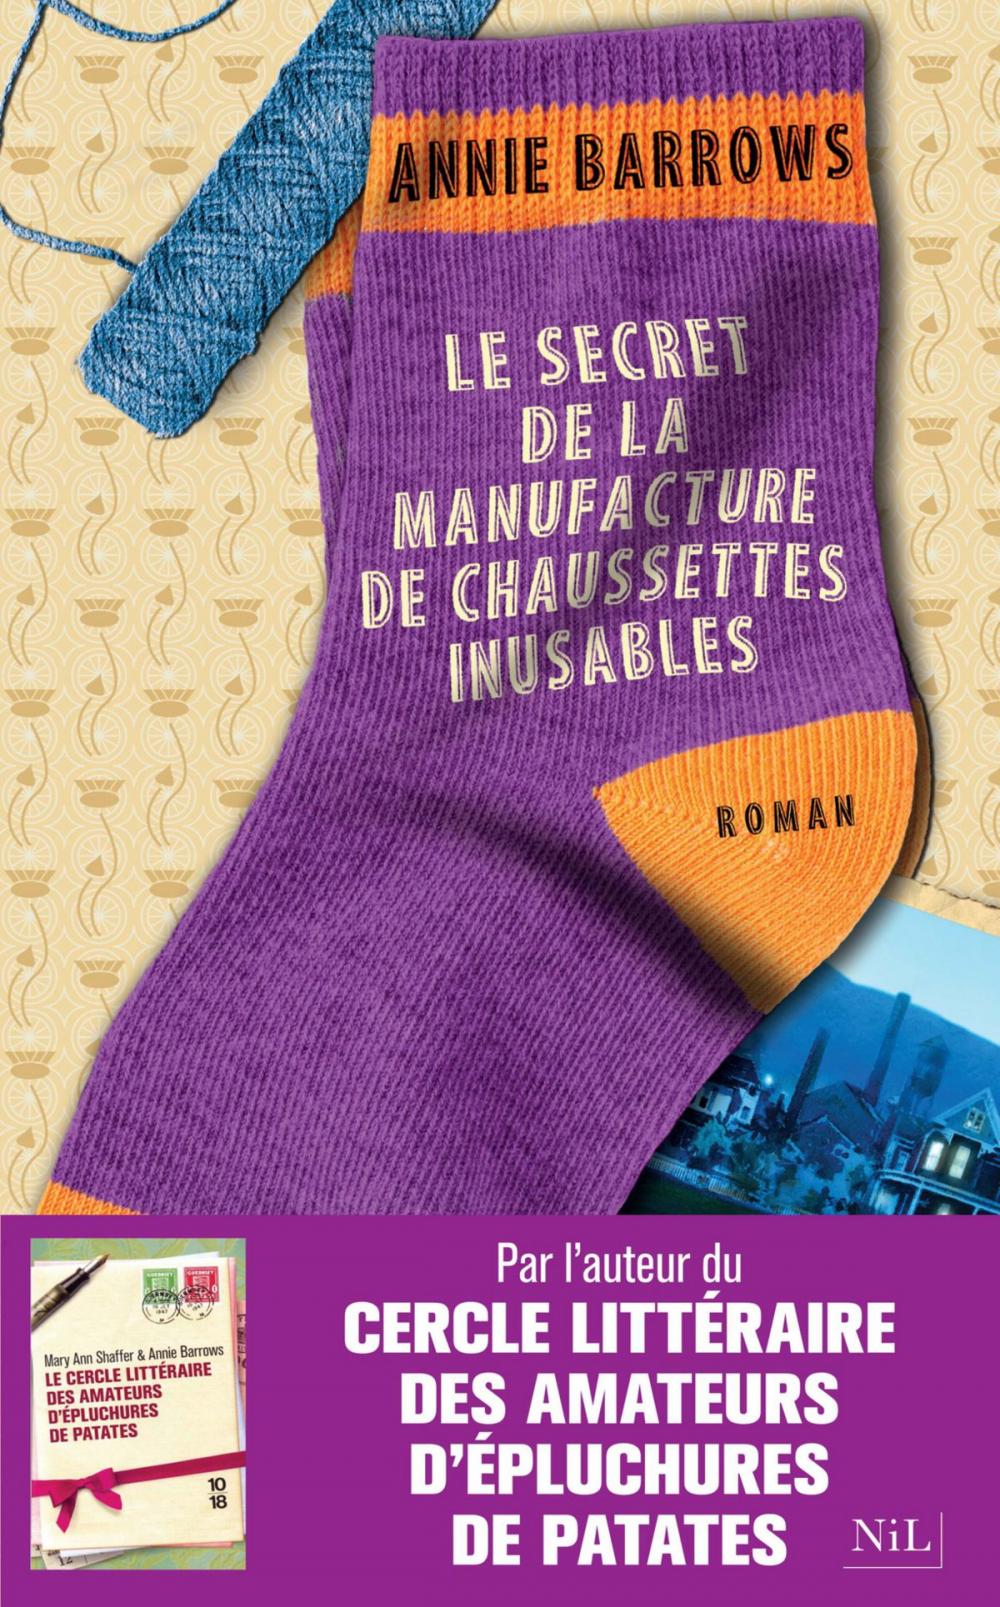 Big bigCover of Le Secret de la manufacture de chaussettes inusables